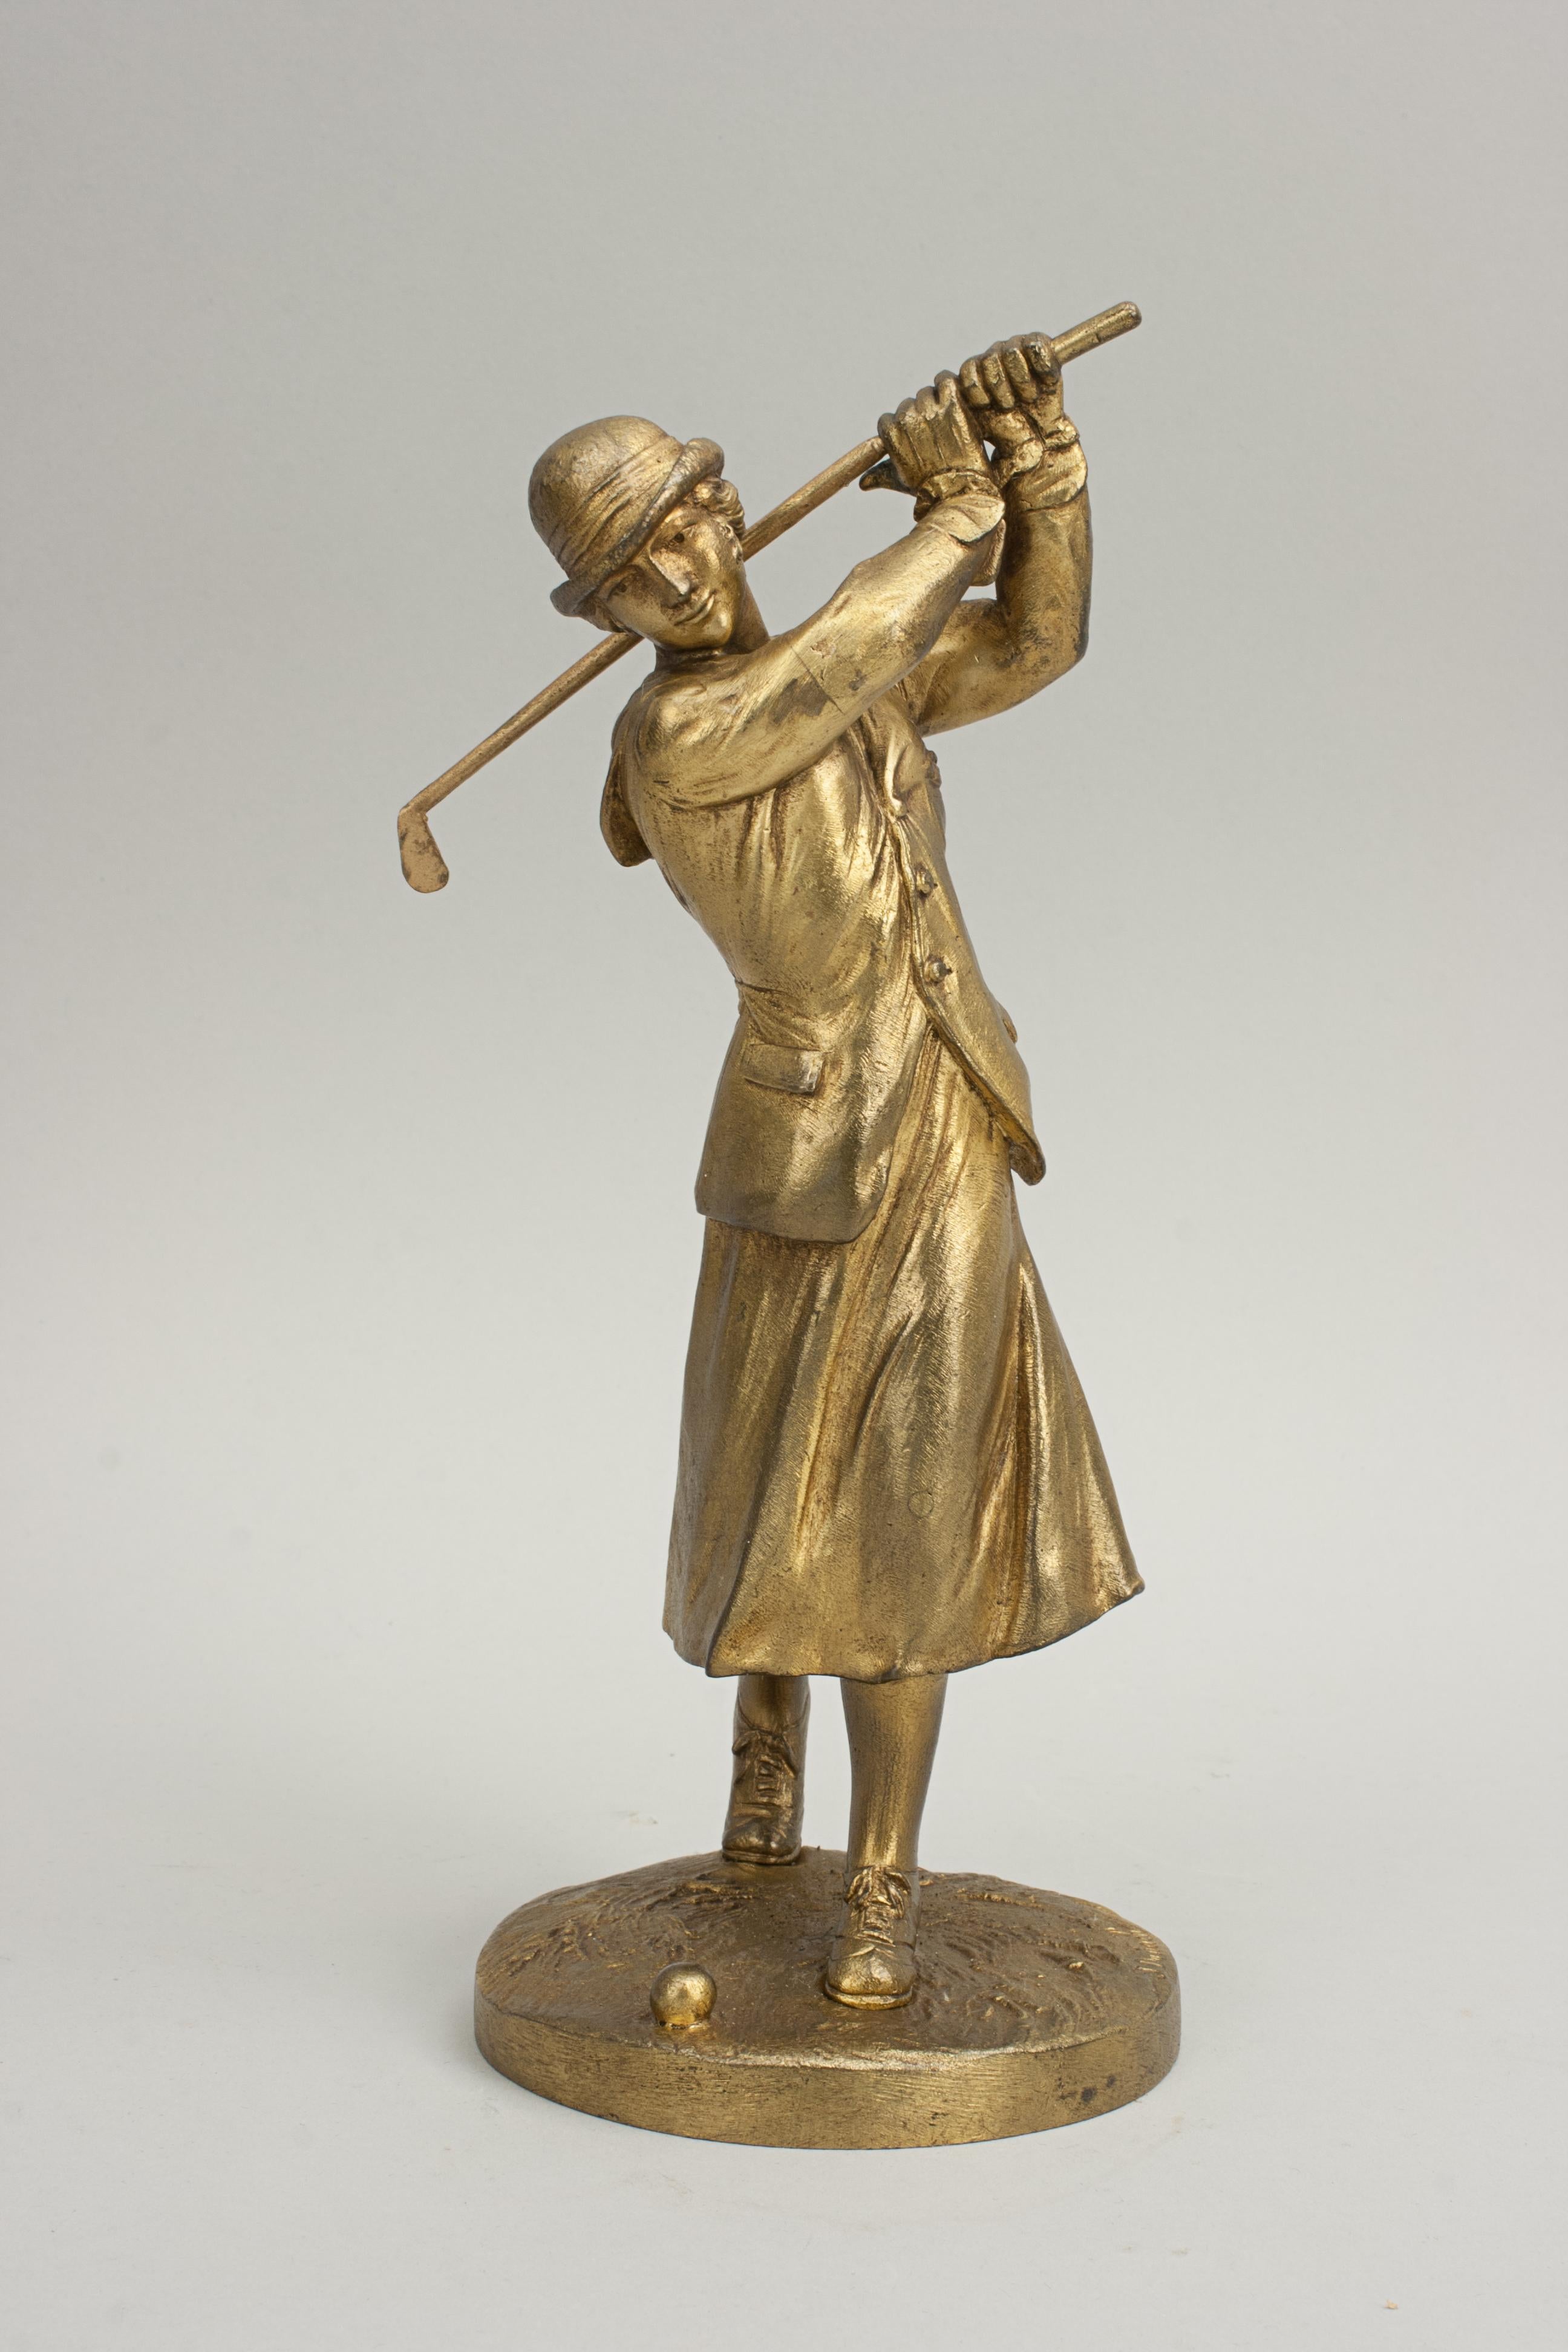 Vintage Jose Dunach Bronze Lady Golf Figure.
Très belle sculpture française de style Art Déco représentant une golfeuse montée sur une base ronde naturaliste. La golfeuse est en position de poursuite. Cette statue en bronze a une finition dorée avec